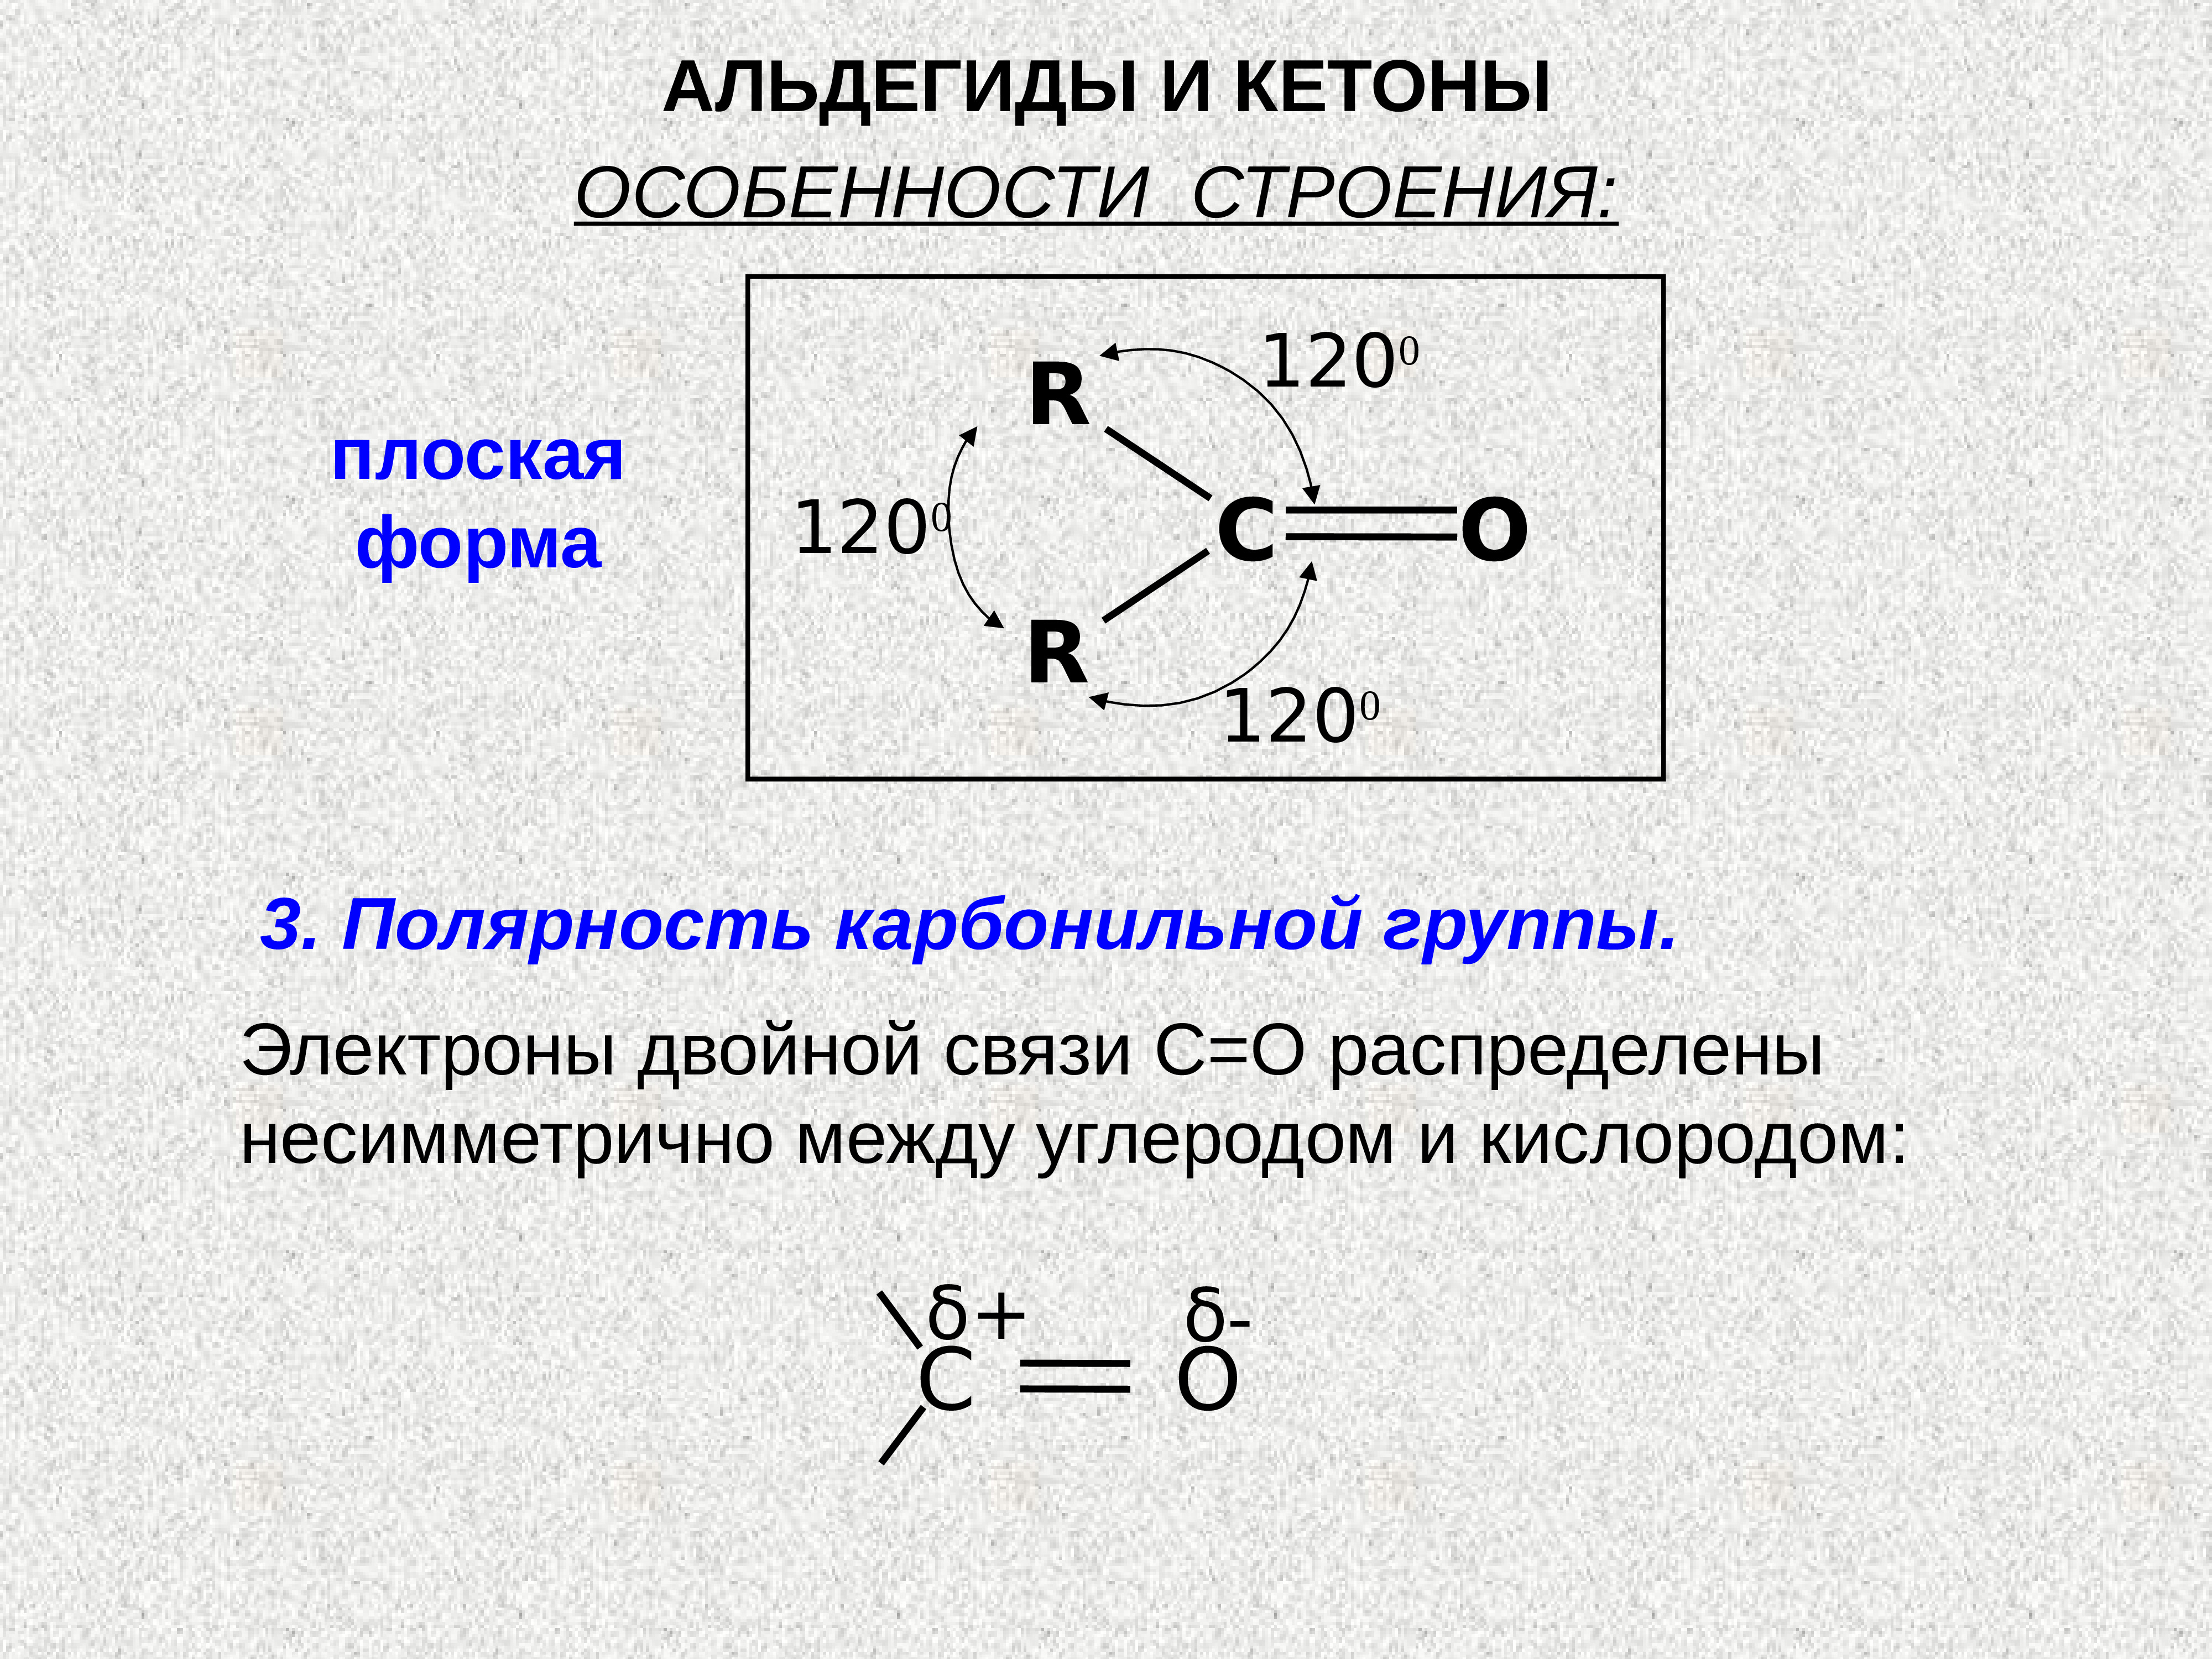 Общая формула карбонильной группы. Электронное строение альдегидов. Строение карбонильной группы. Строение альдегидов. Особенности строения альдегидов.